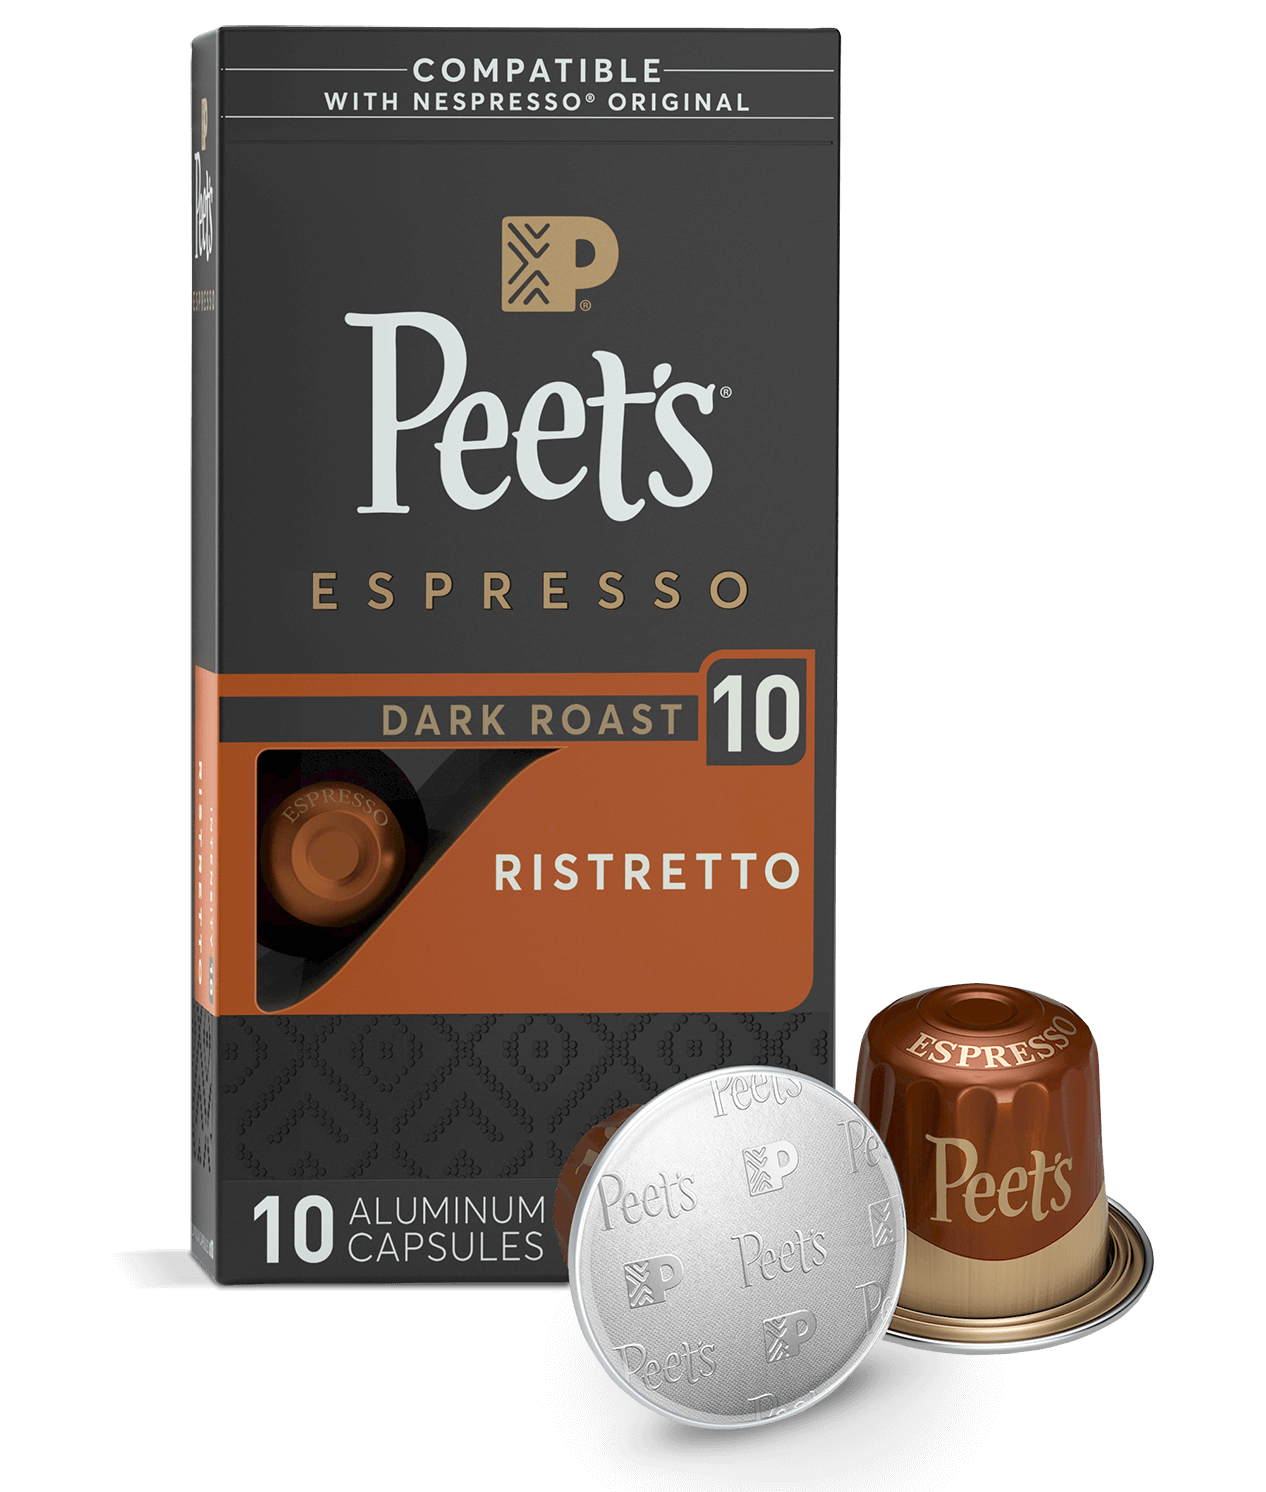 Capsulas Nespresso Profesional - Italian Coffee Ristretto